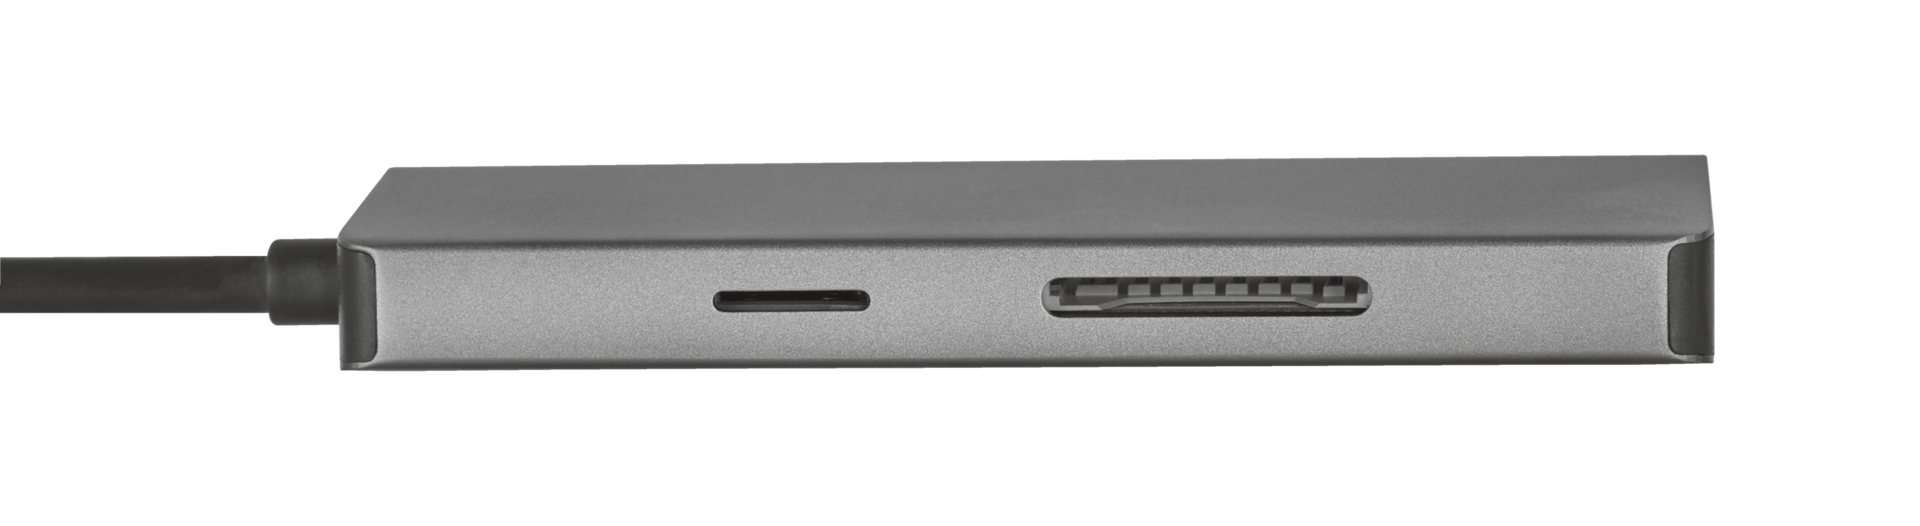 Dalyx Aluminium 7-in-1 USB-C Multiport Adapter-Side